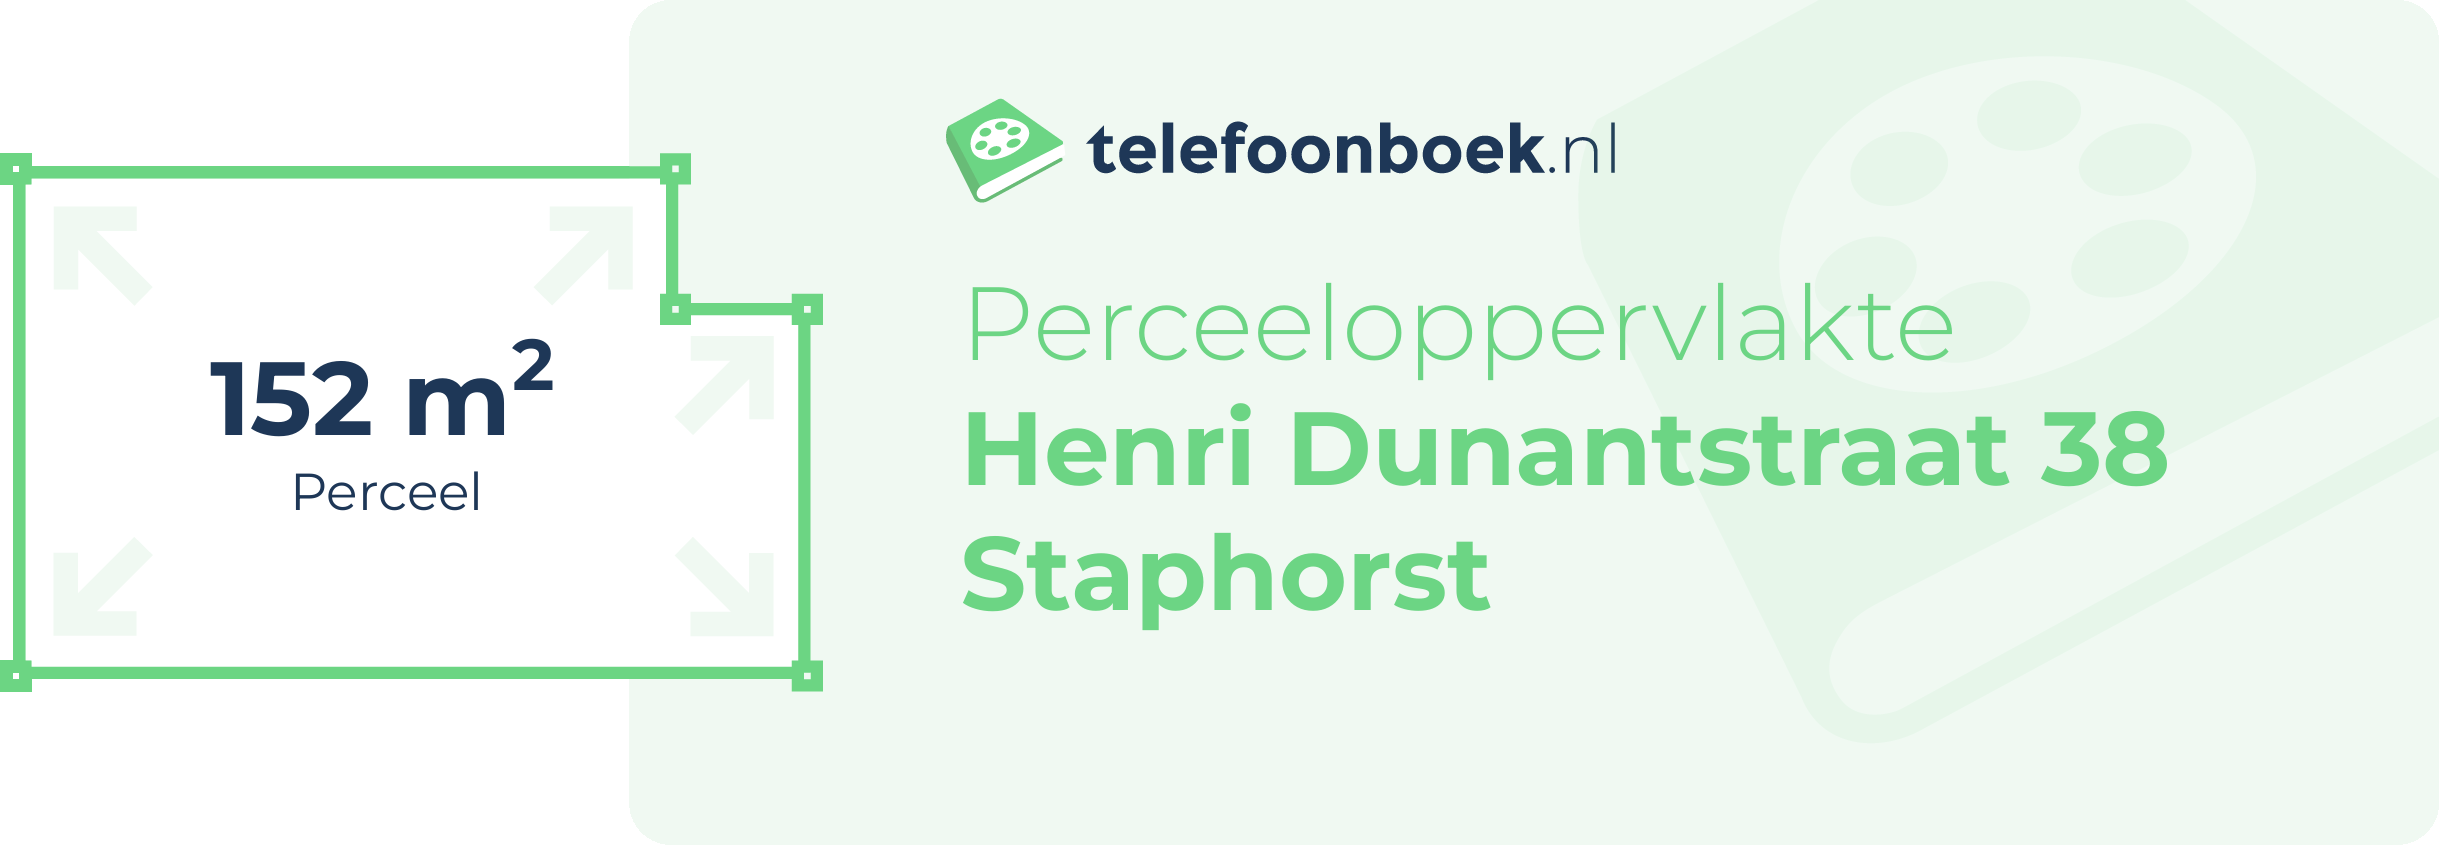 Perceeloppervlakte Henri Dunantstraat 38 Staphorst